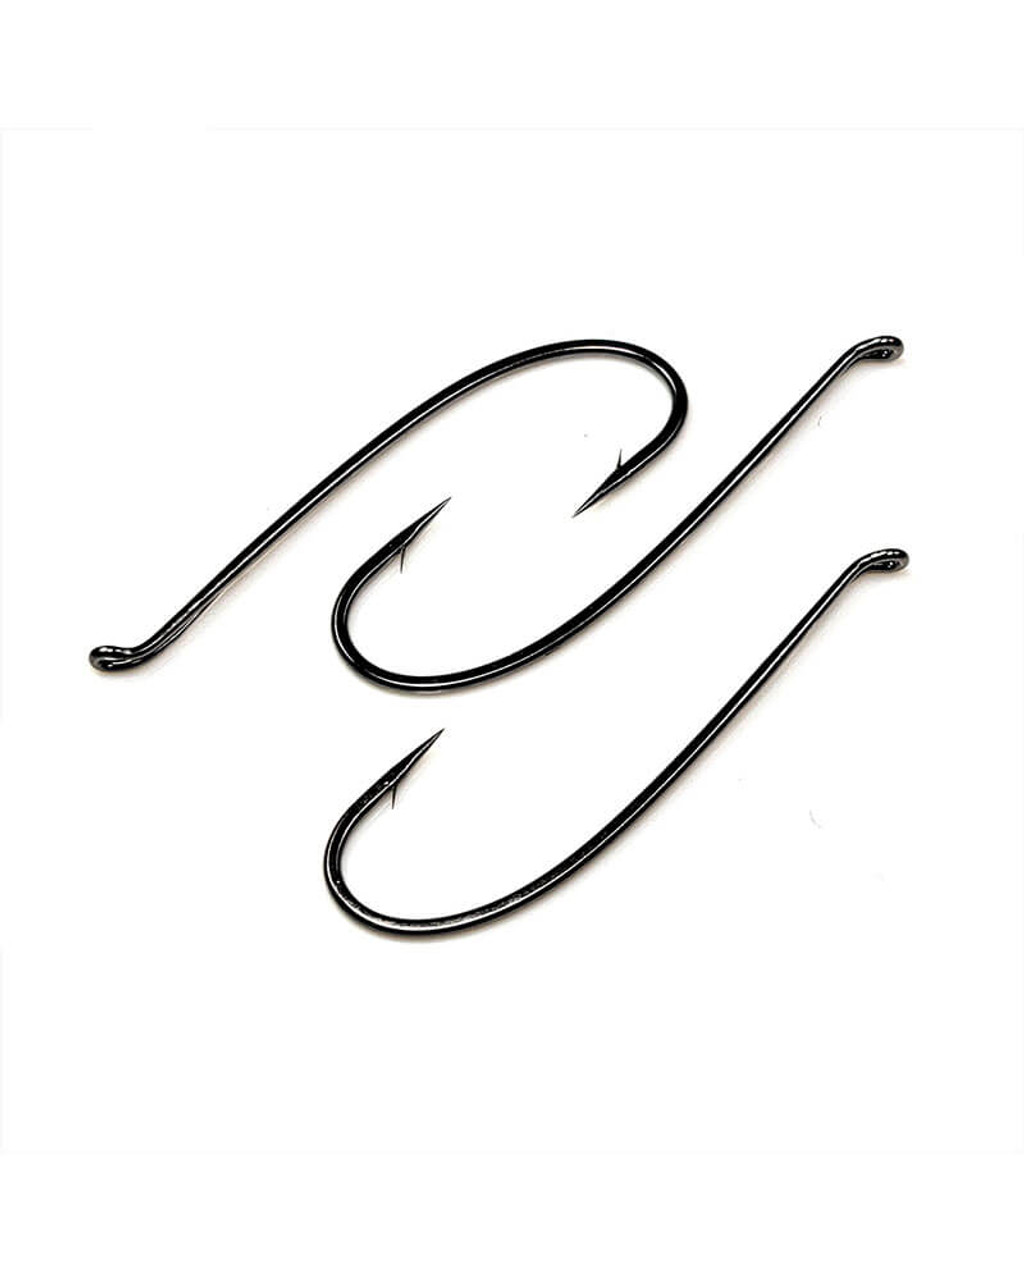 Gamakatsu T10-6H Salmon Tapered Loop-Up Eye Hooks (20 Pack)